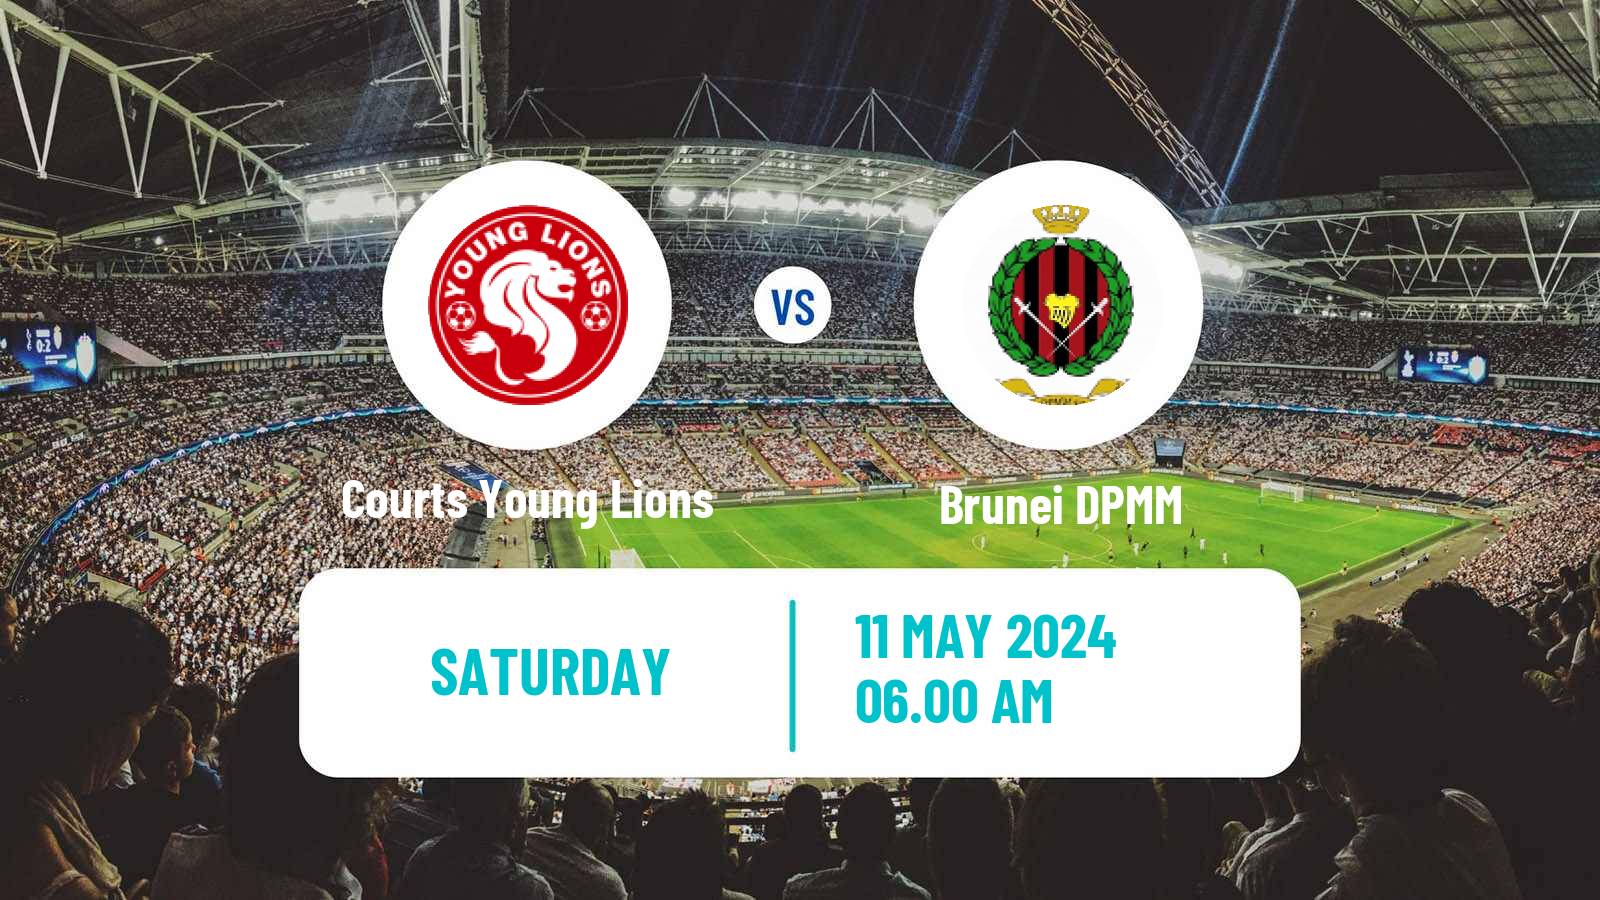 Soccer Singapore Premier League Courts Young Lions - Brunei DPMM